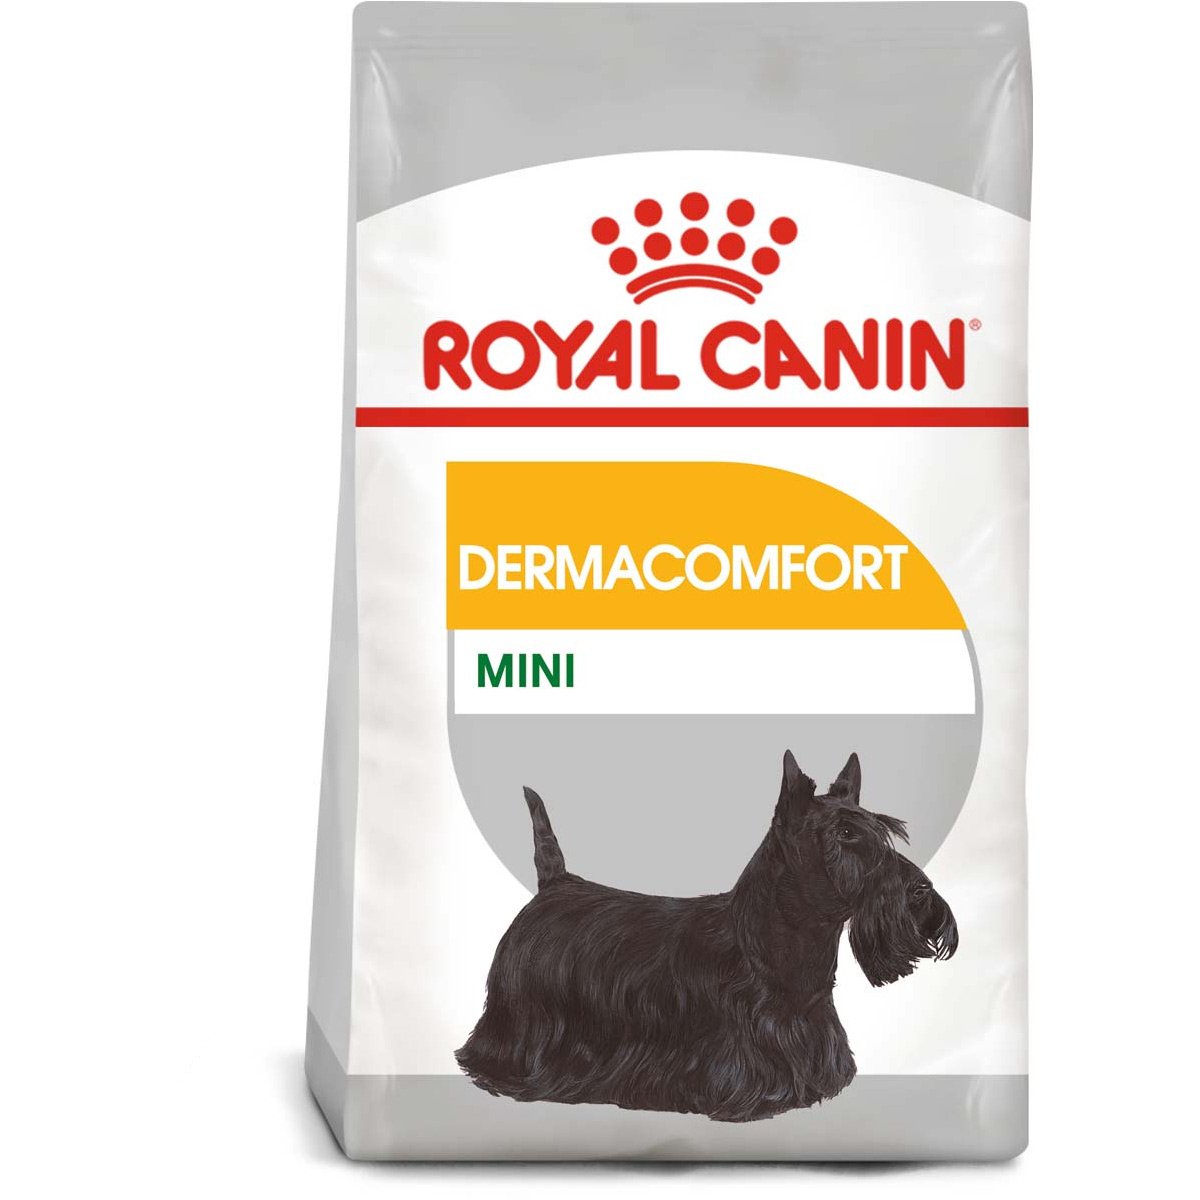 ROYAL CANIN DERMACOMFORT MINI Trockenfutter für kleine Hunde mit empfindlicher Haut 2x8kg von Royal Canin